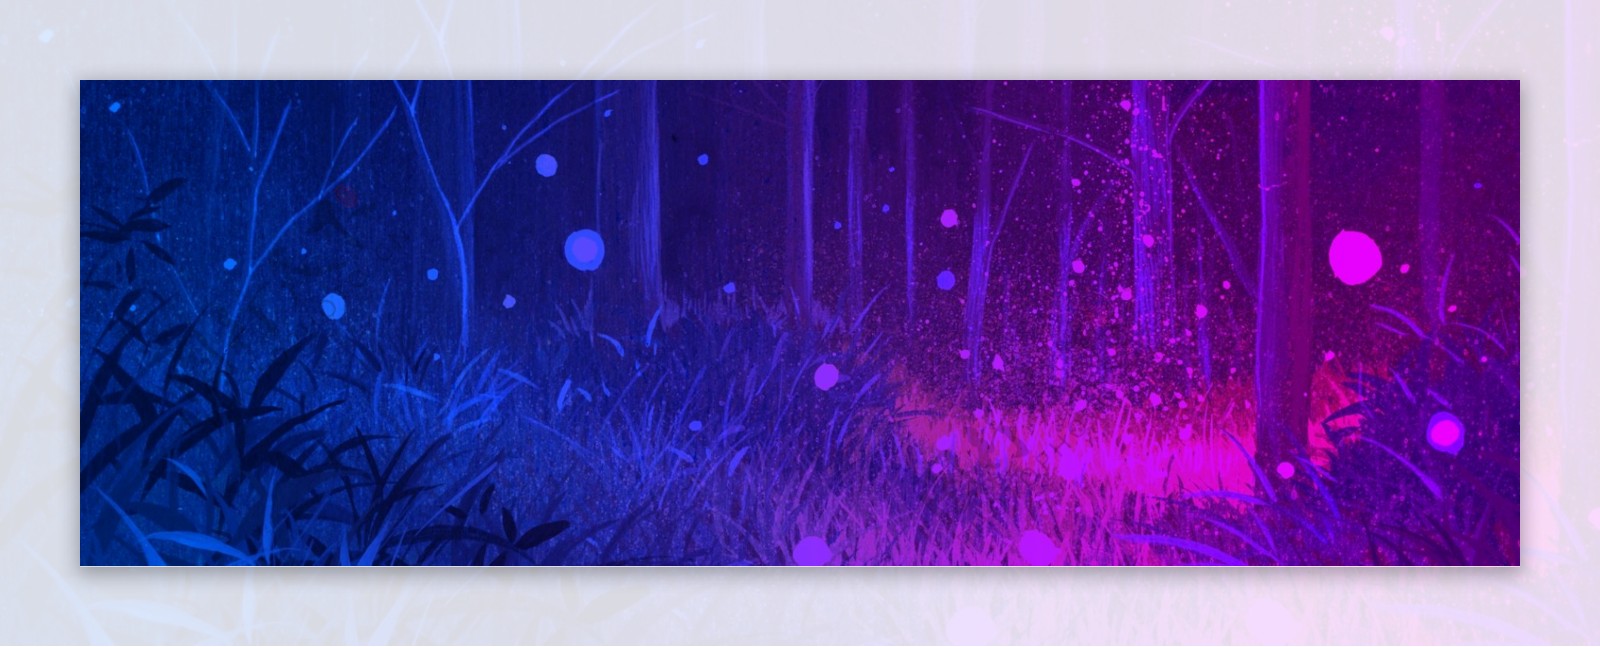 紫色梦幻森林系banner背景20